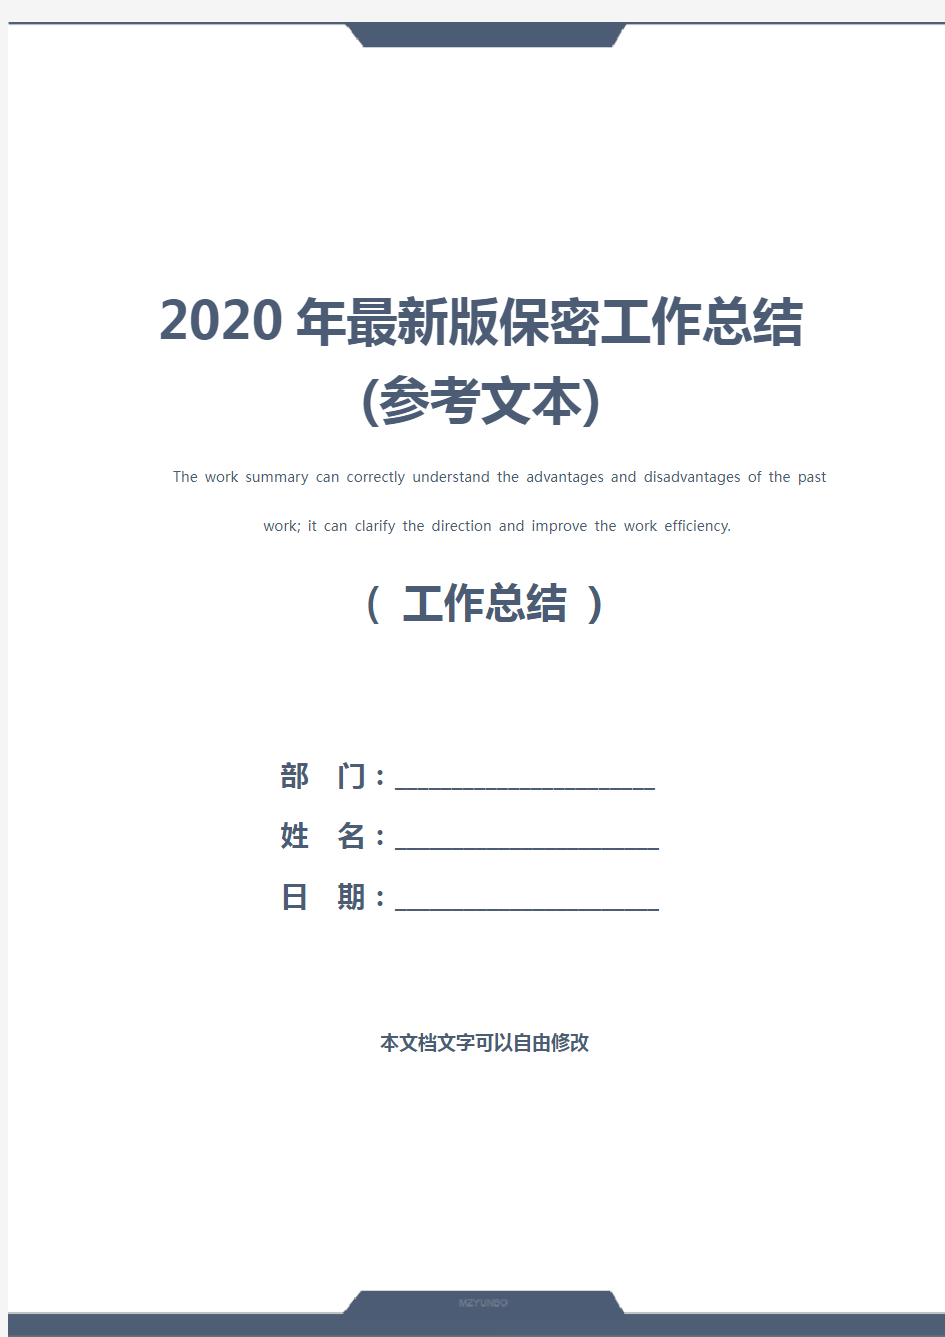 2020年最新版保密工作总结(参考文本)